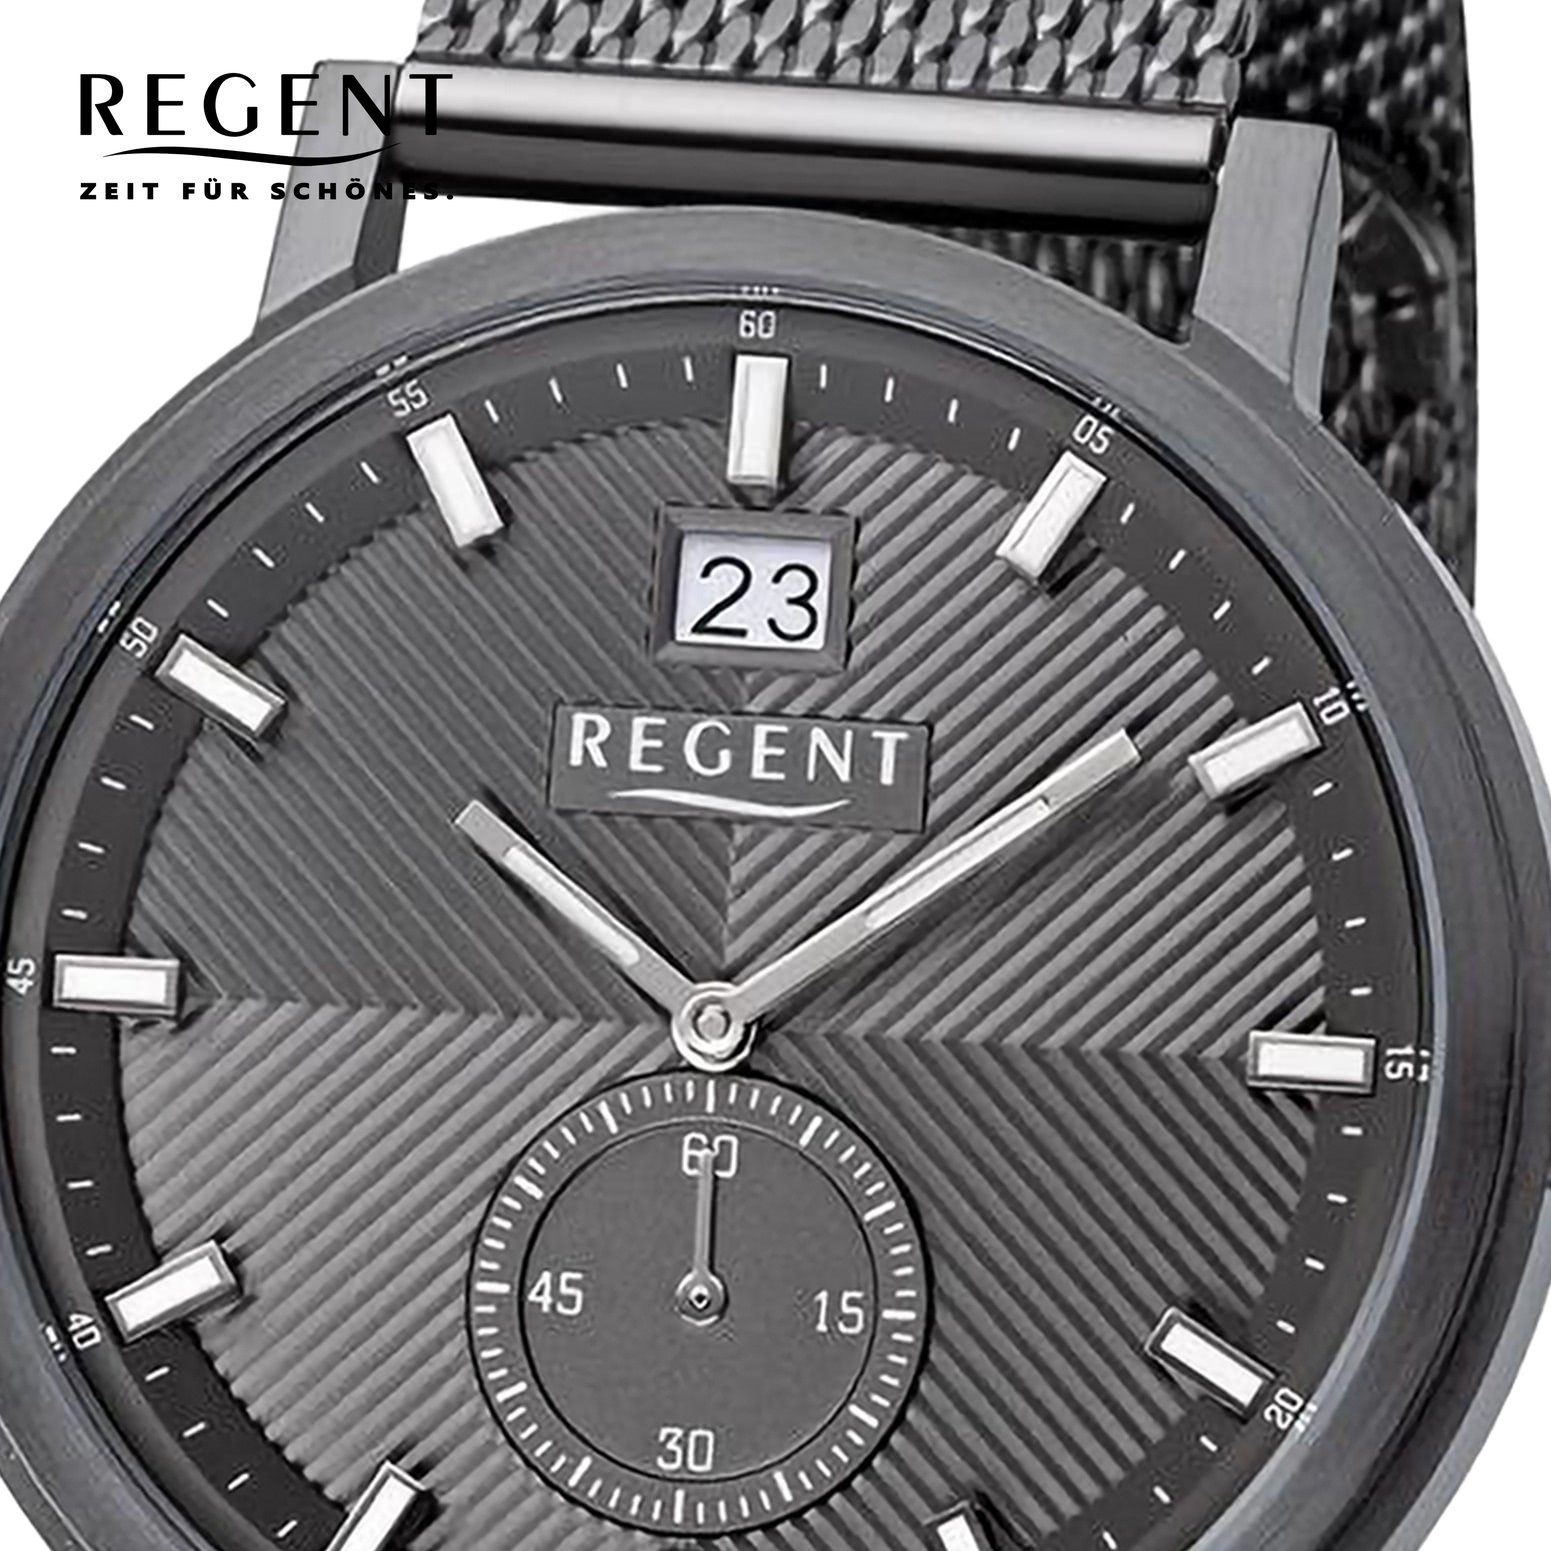 Regent Quarzuhr Regent Herren Armbanduhr Analog, Herren Armbanduhr rund,  extra groß (ca. 39mm), Metallarmband, Uhrzeit